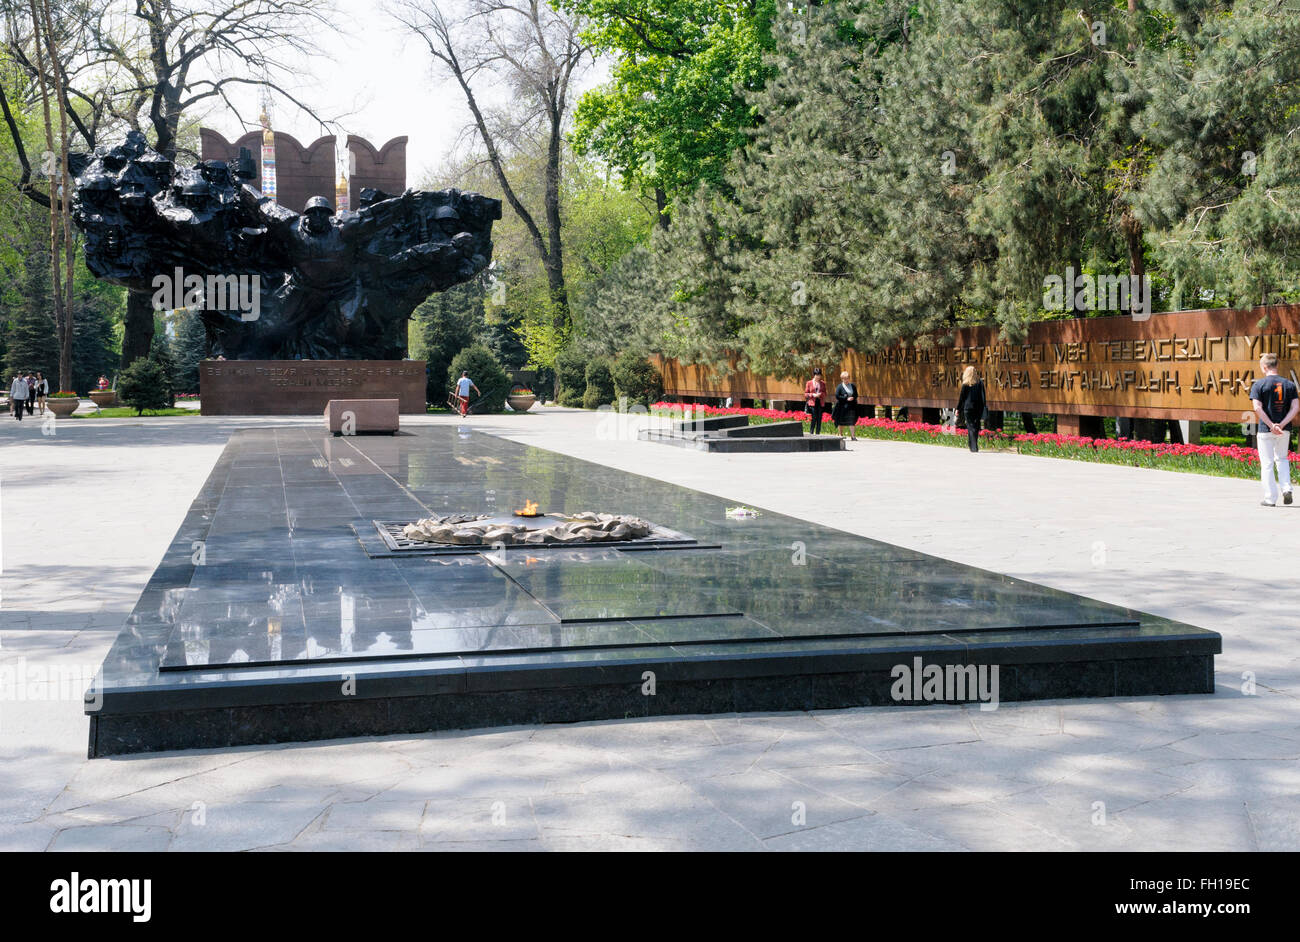 La flamme éternelle commémorant les morts de la guerre civile et la DEUXIÈME GUERRE MONDIALE, Burns en face de la gloire, le Kazakhstan Almaty Monument Banque D'Images